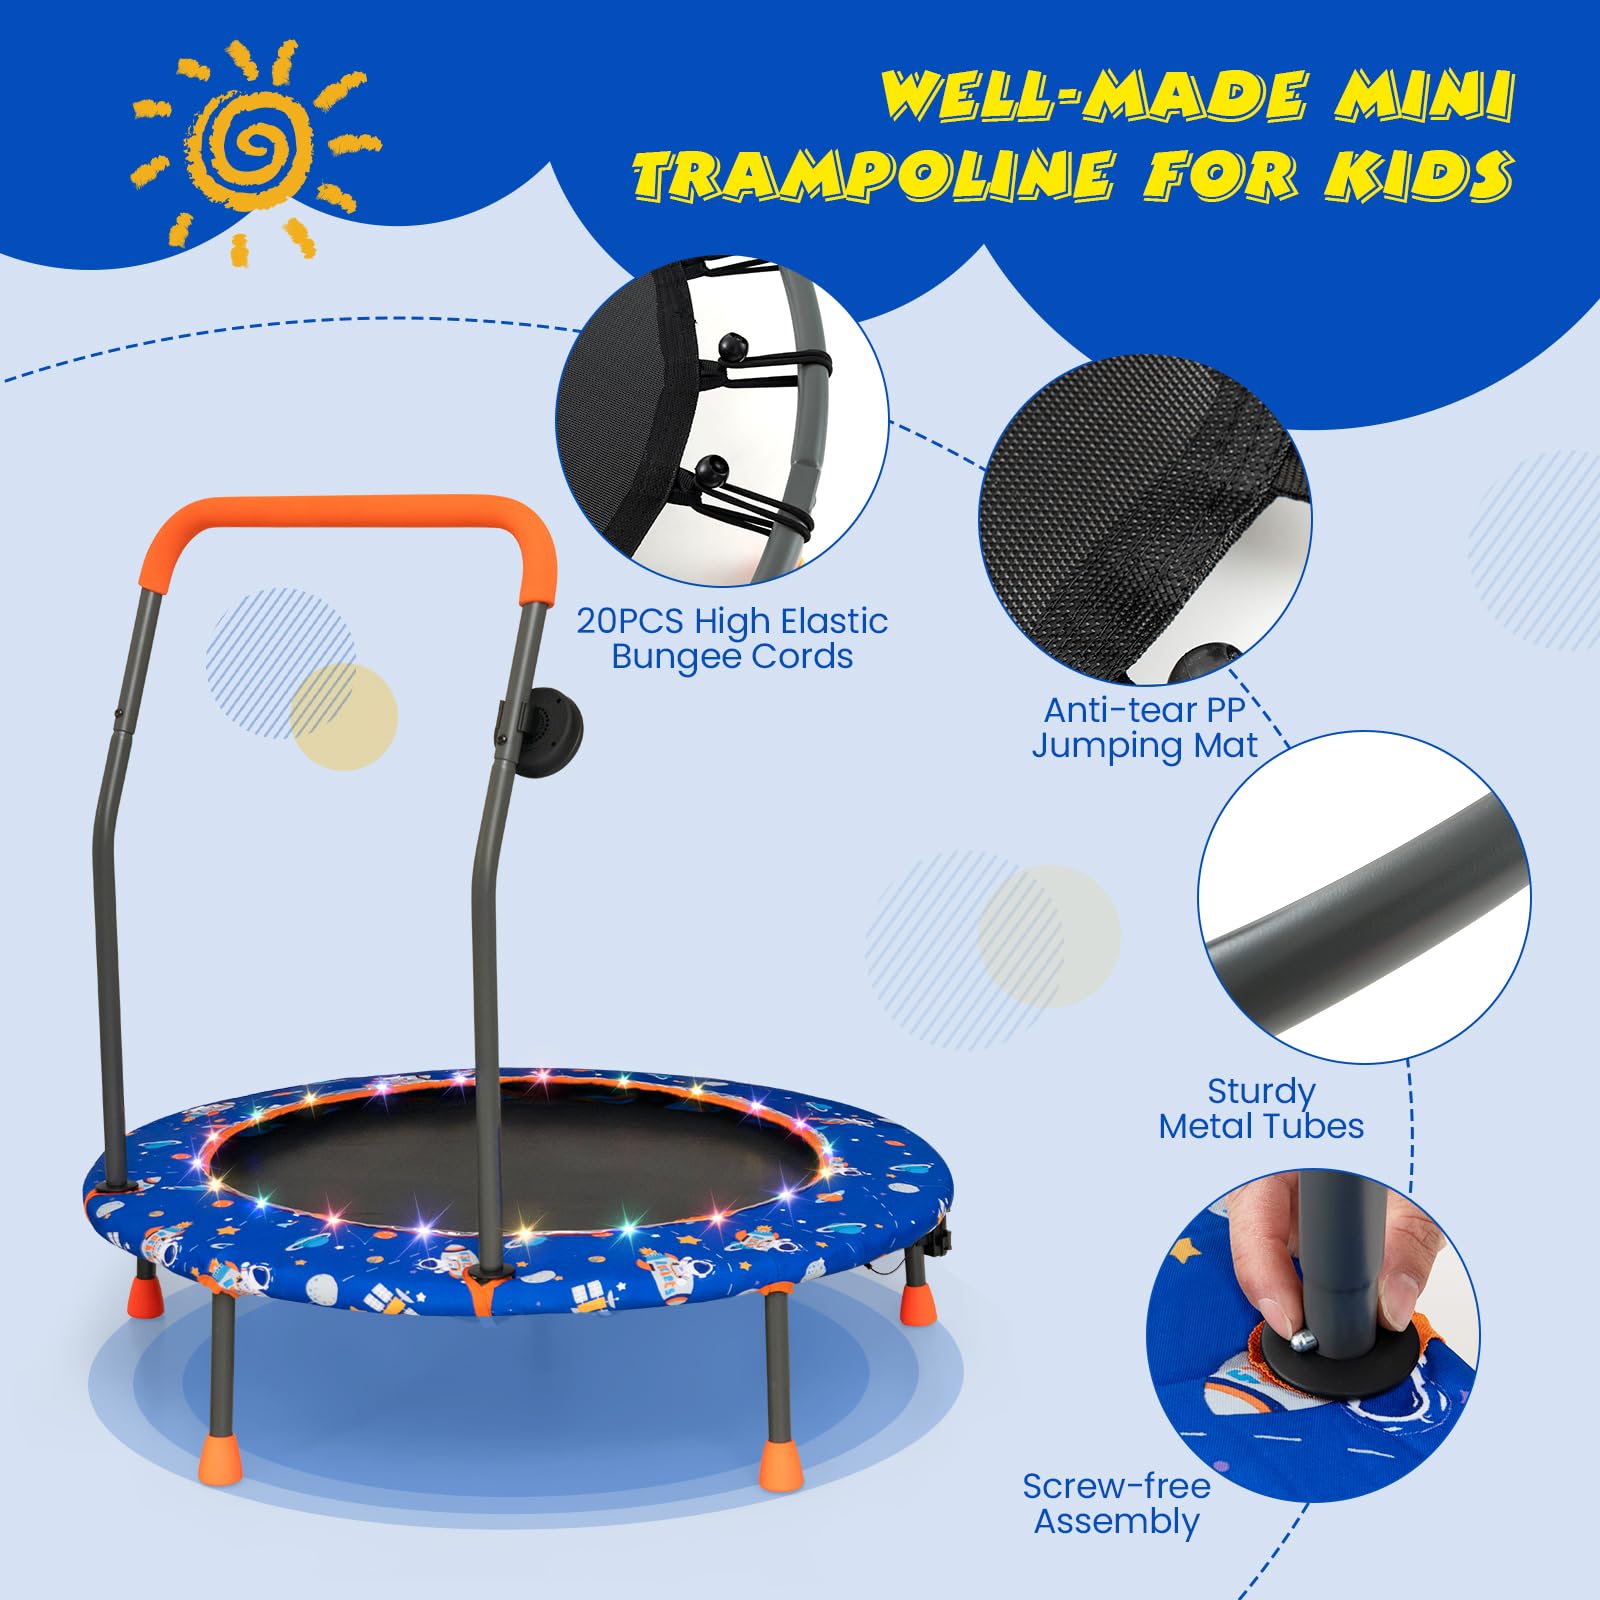 Giantex 36" Trampoline for Kids